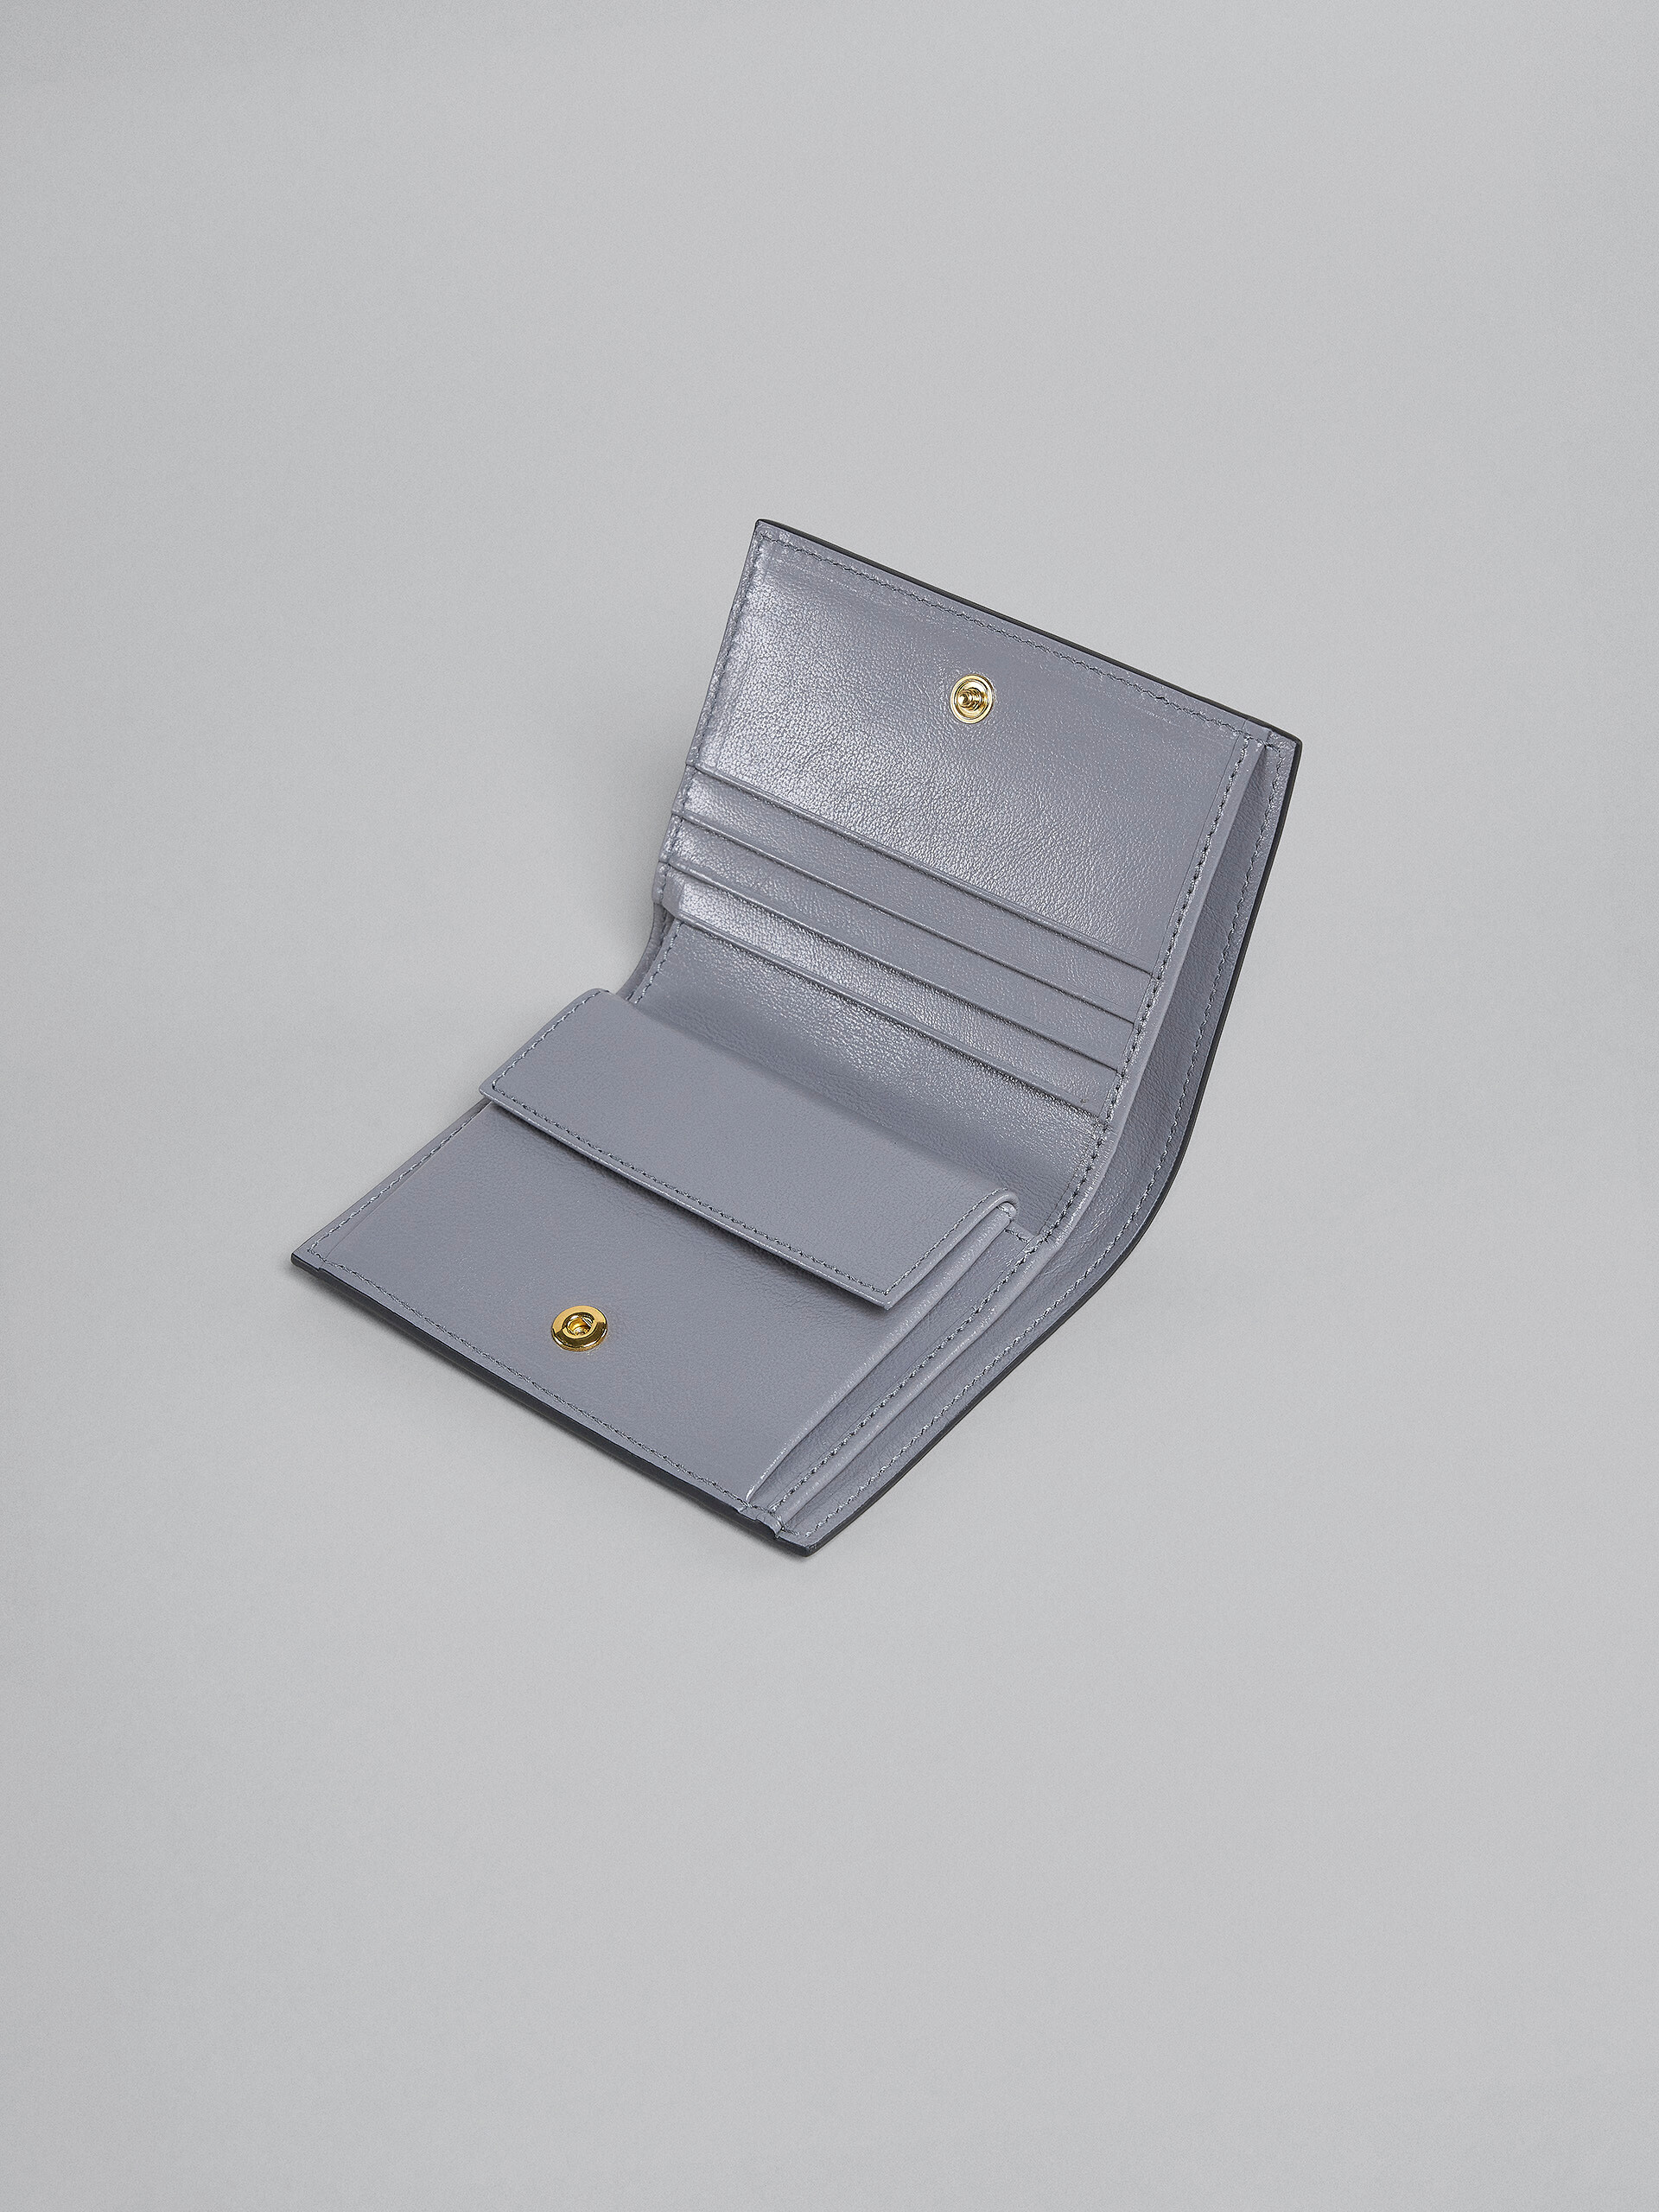 Zweifache Faltbrieftasche aus Leder in Grau und Blau - Brieftaschen - Image 4